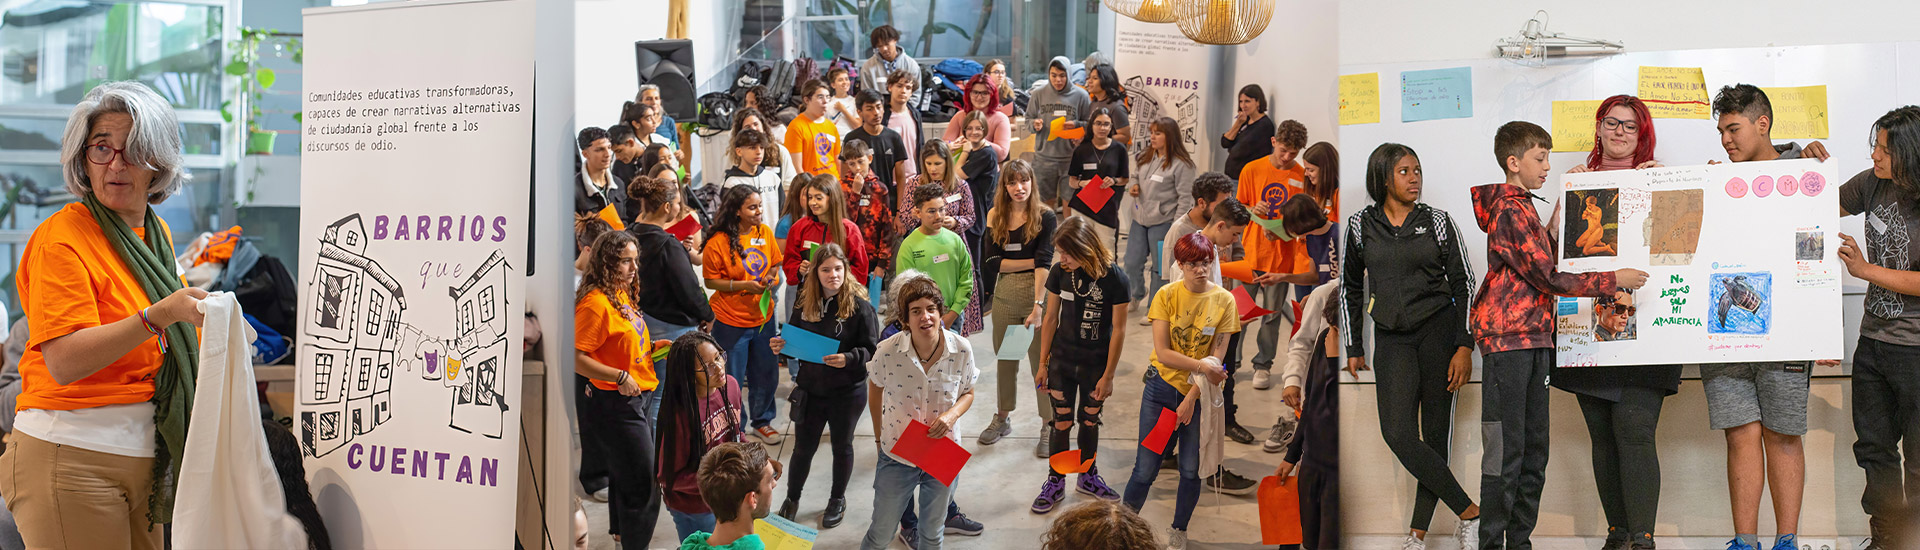 El proyecto ‘Barrios que cuentan’ visibiliza el trabajo de jóvenes de Madrid frente a los discursos de odio